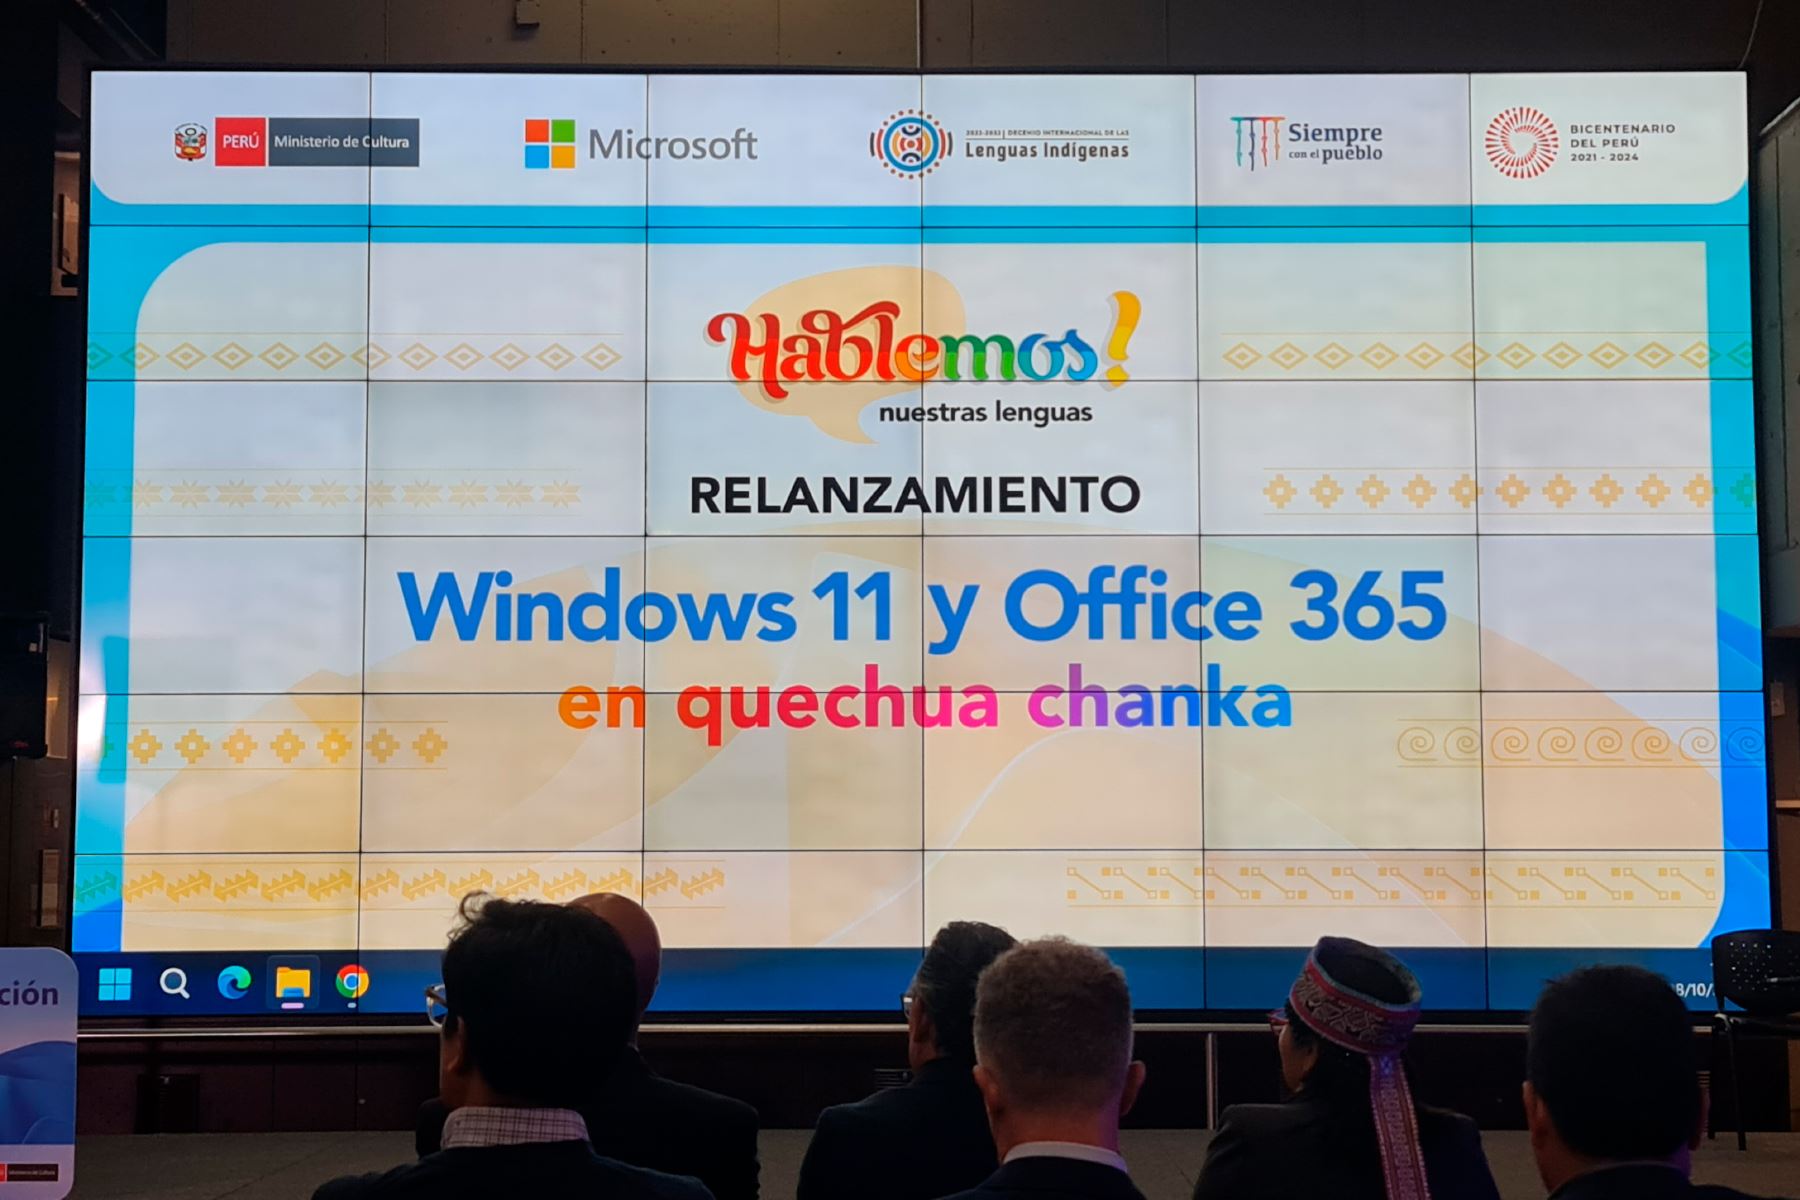 Windows 11 y Office 365 está disponible en 190 países y en más de 100 idiomas.